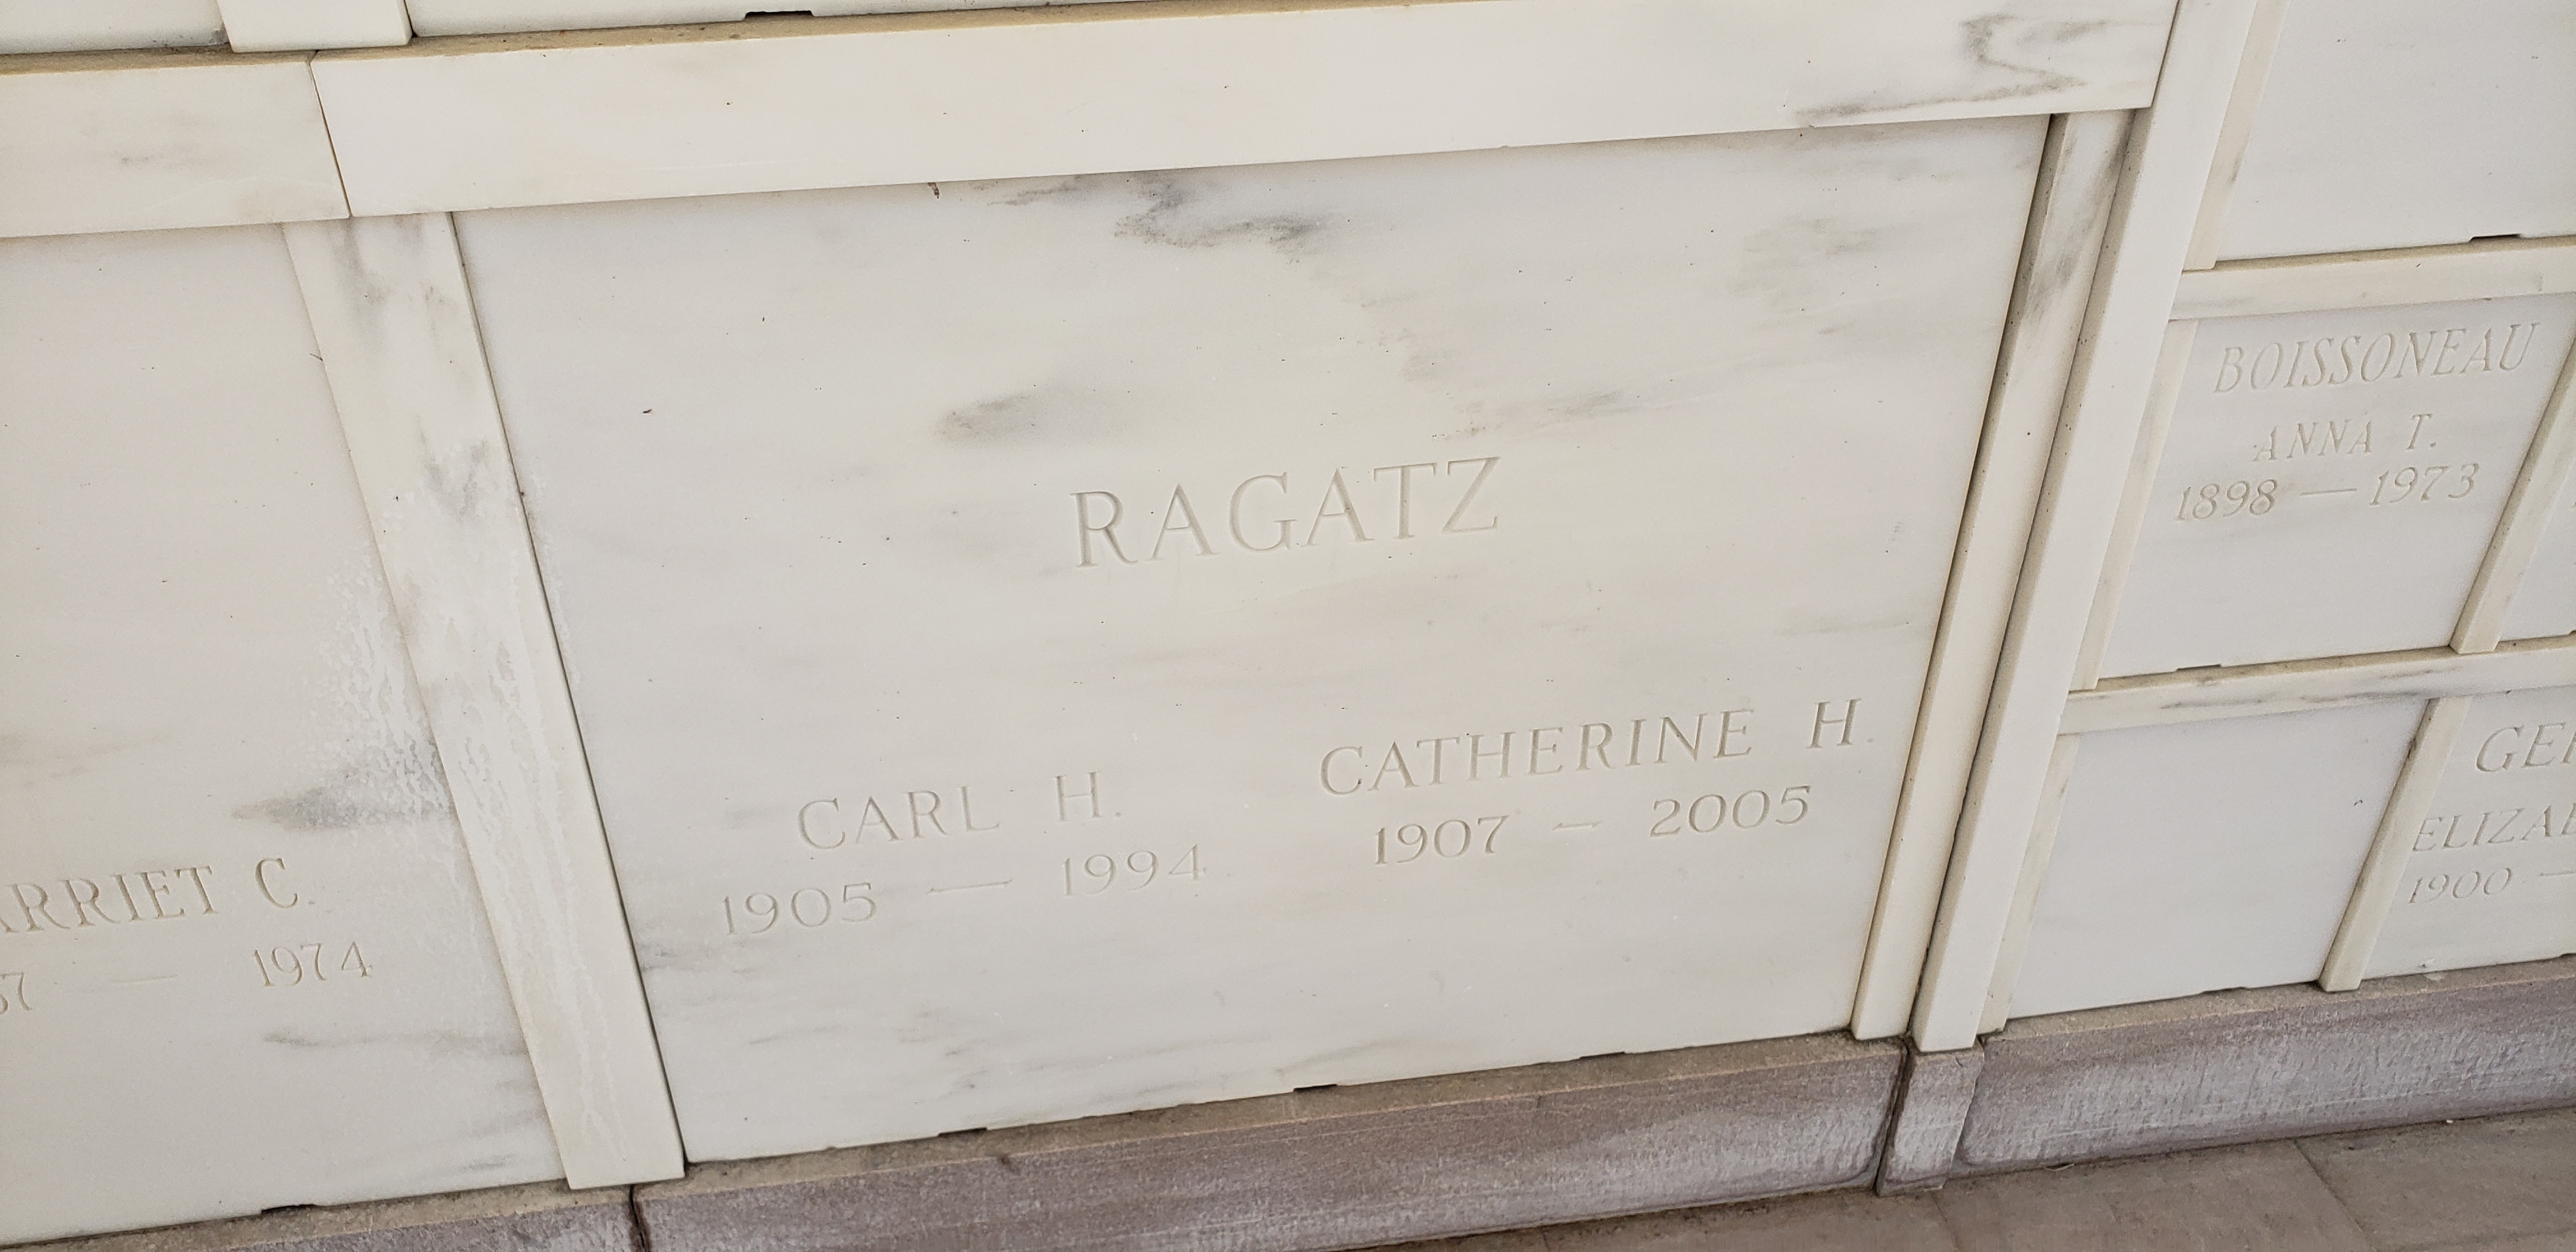 Catherine H Ragatz